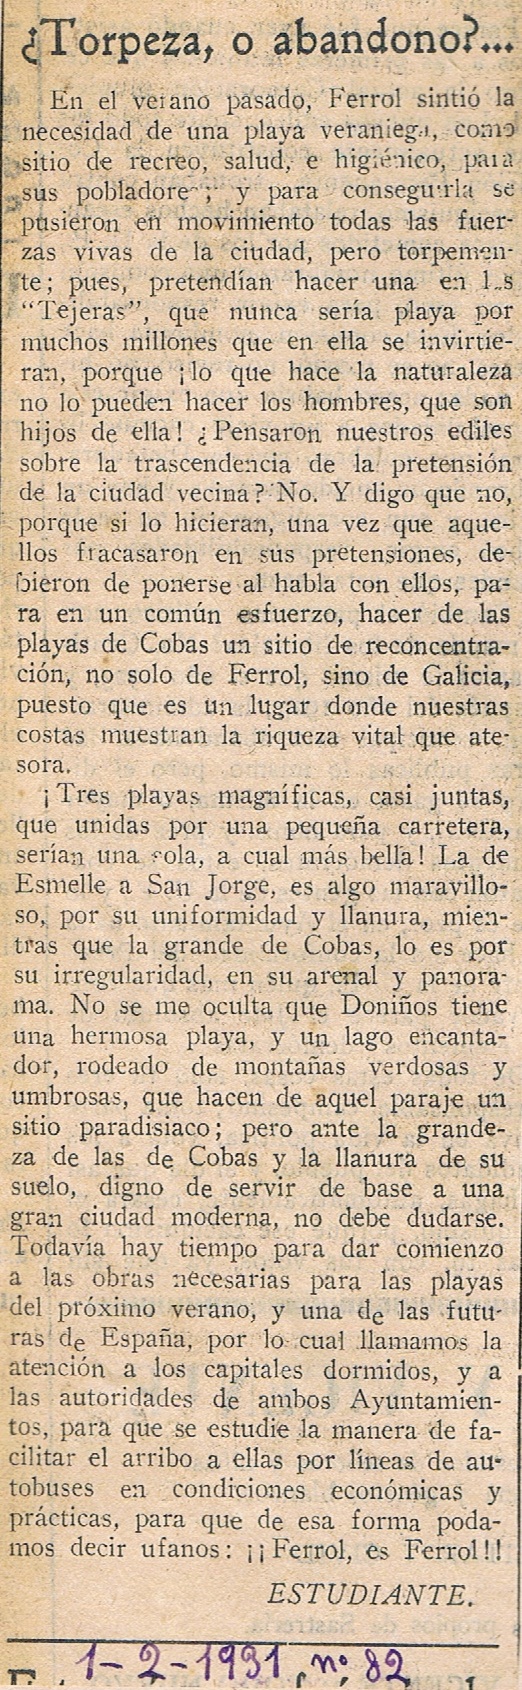 La Libertad 01-02-1931. Nº 82 (Alejandro Porto Leis)